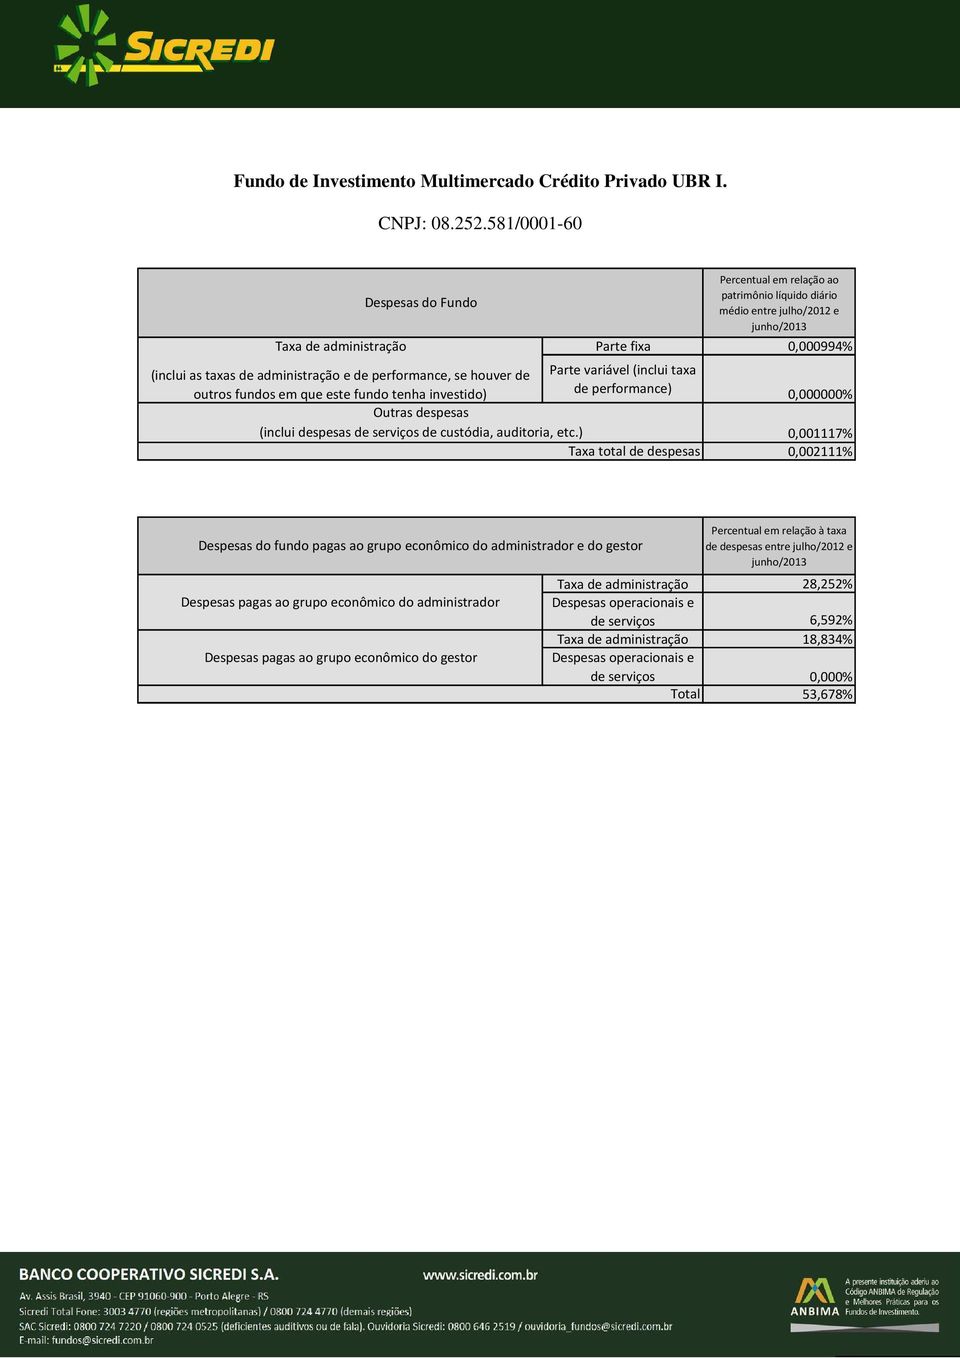 581/0001-60 Taxa de administração Parte fixa 0,000994%